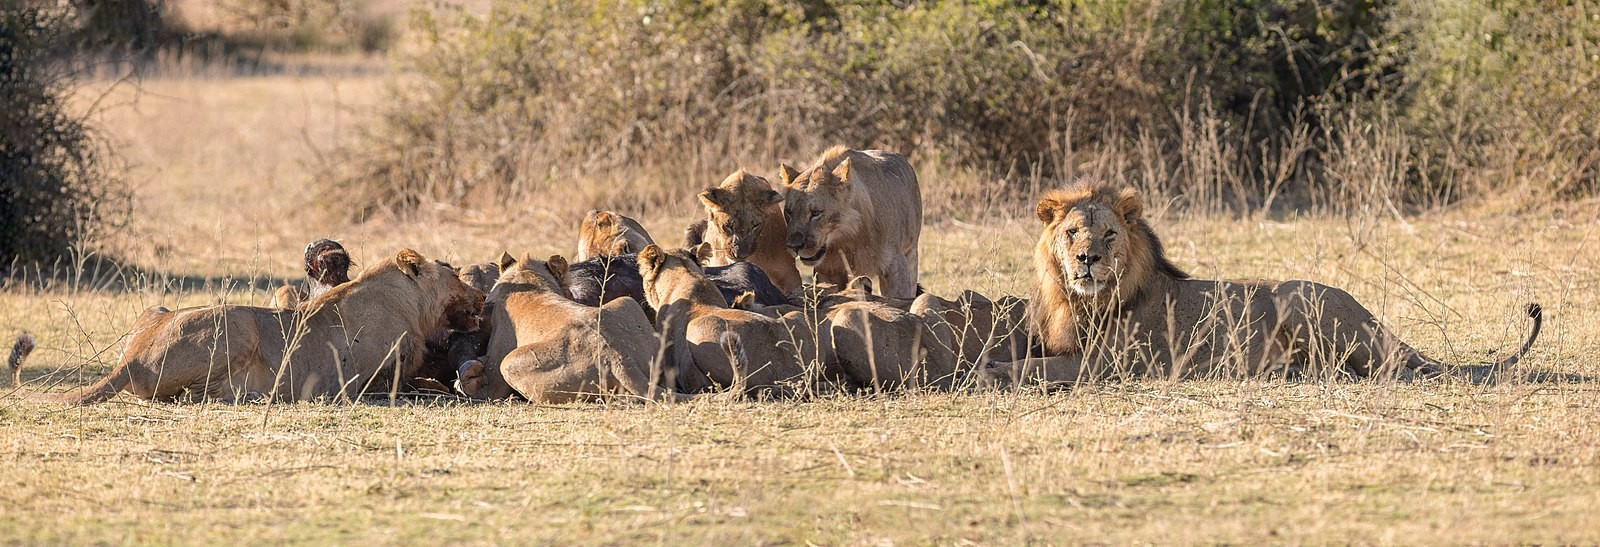 Leões são os únicos felinos que convivem em grupos (Foto: Diego Delso / Wikimedia Commons / CreativeCommons)